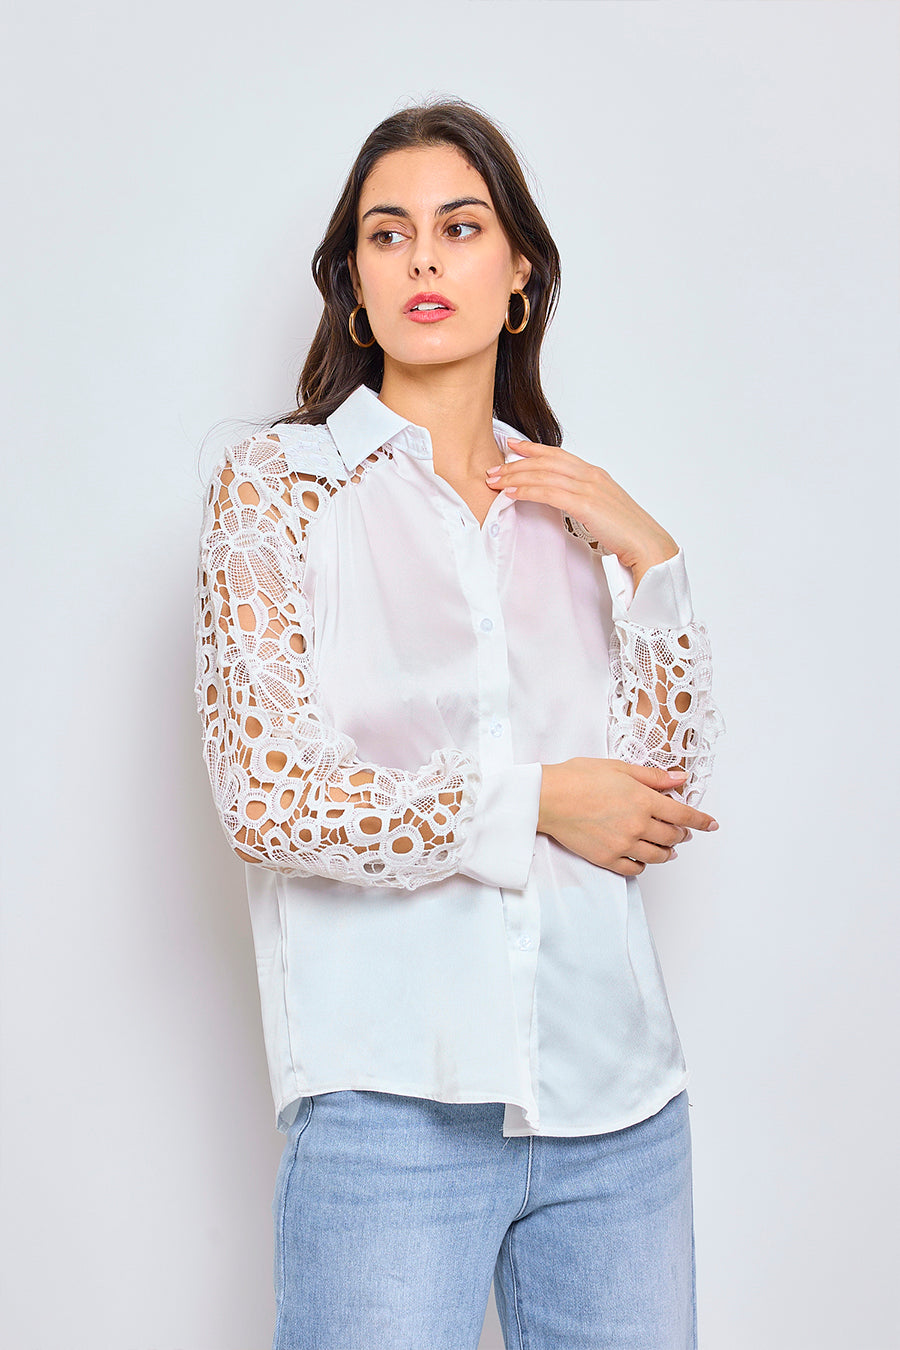 Γυναικείο πουκάμισο Gloriana, Λευκό 2